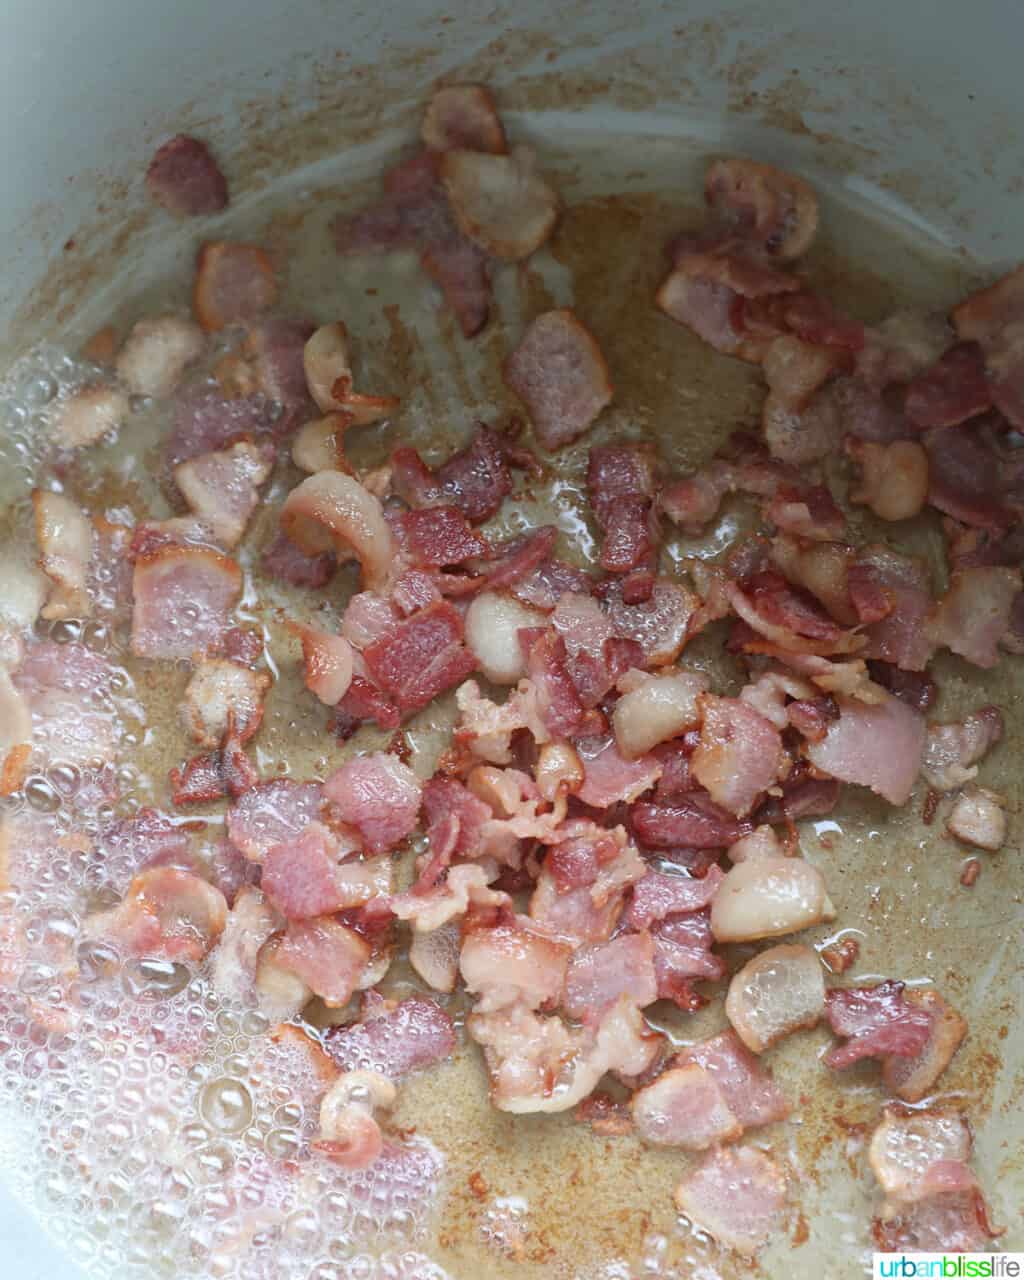 cooking bacon in the Ninja Foodi